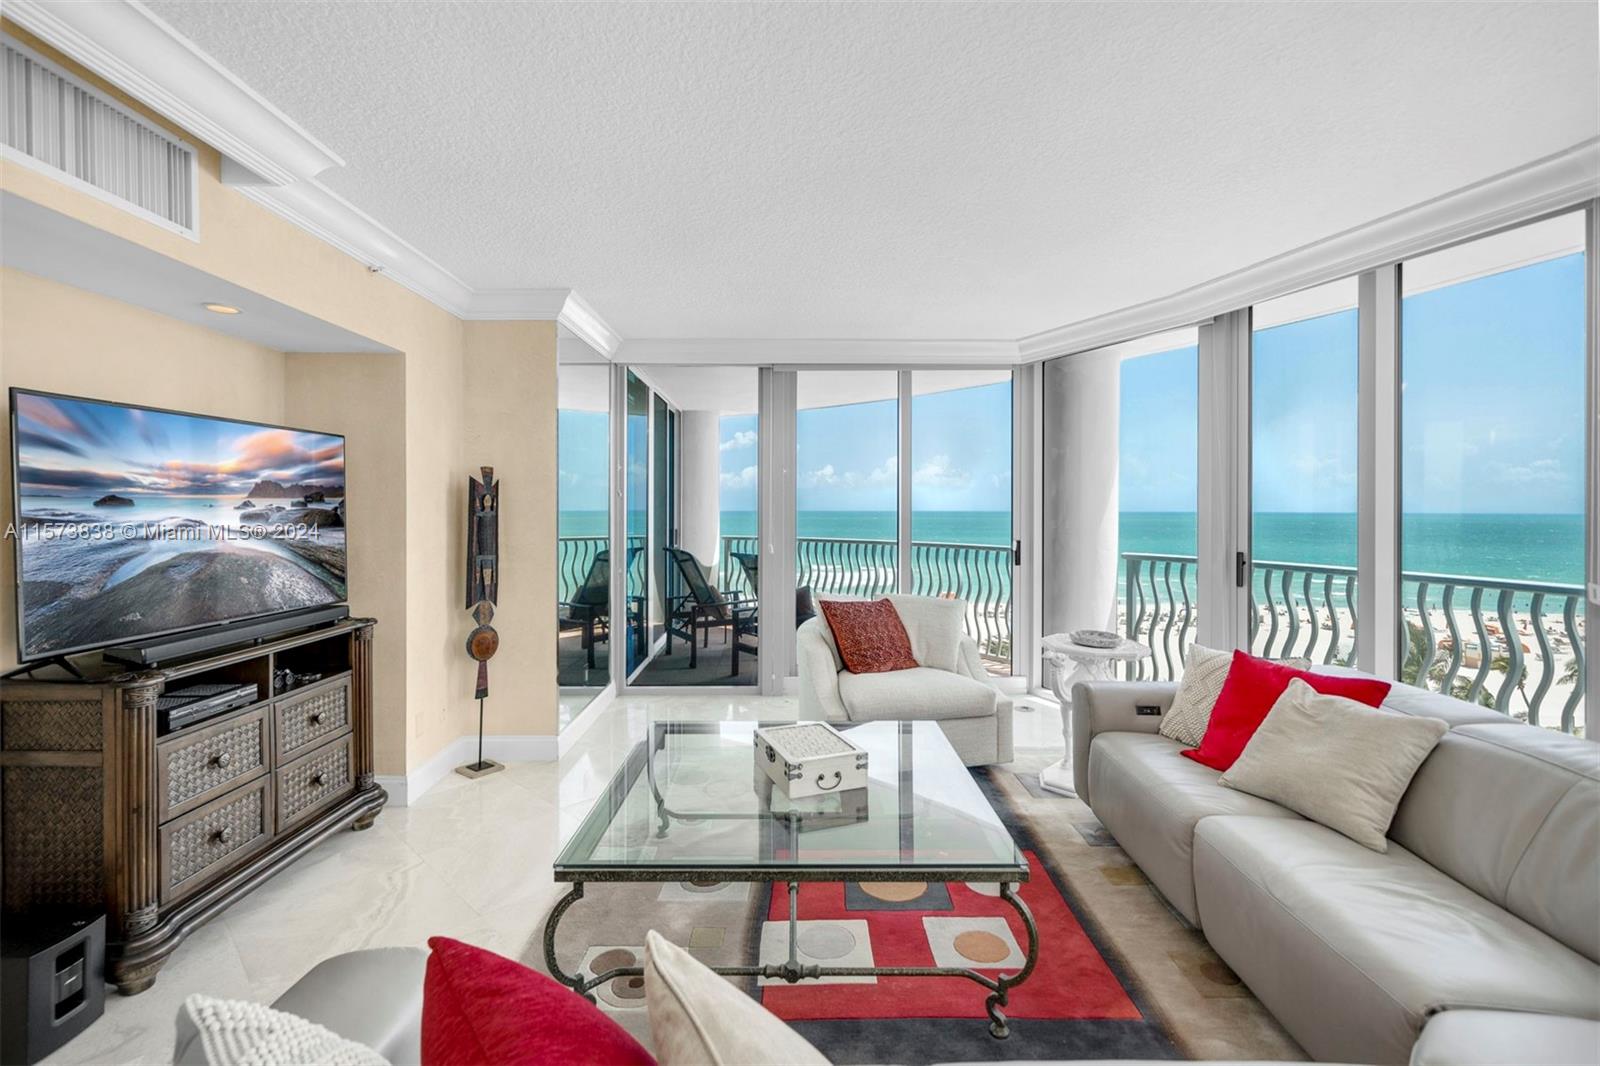 Rental Property at 1500 Ocean Dr 702, Miami Beach, Miami-Dade County, Florida - Bedrooms: 3 
Bathrooms: 3  - $10,000 MO.